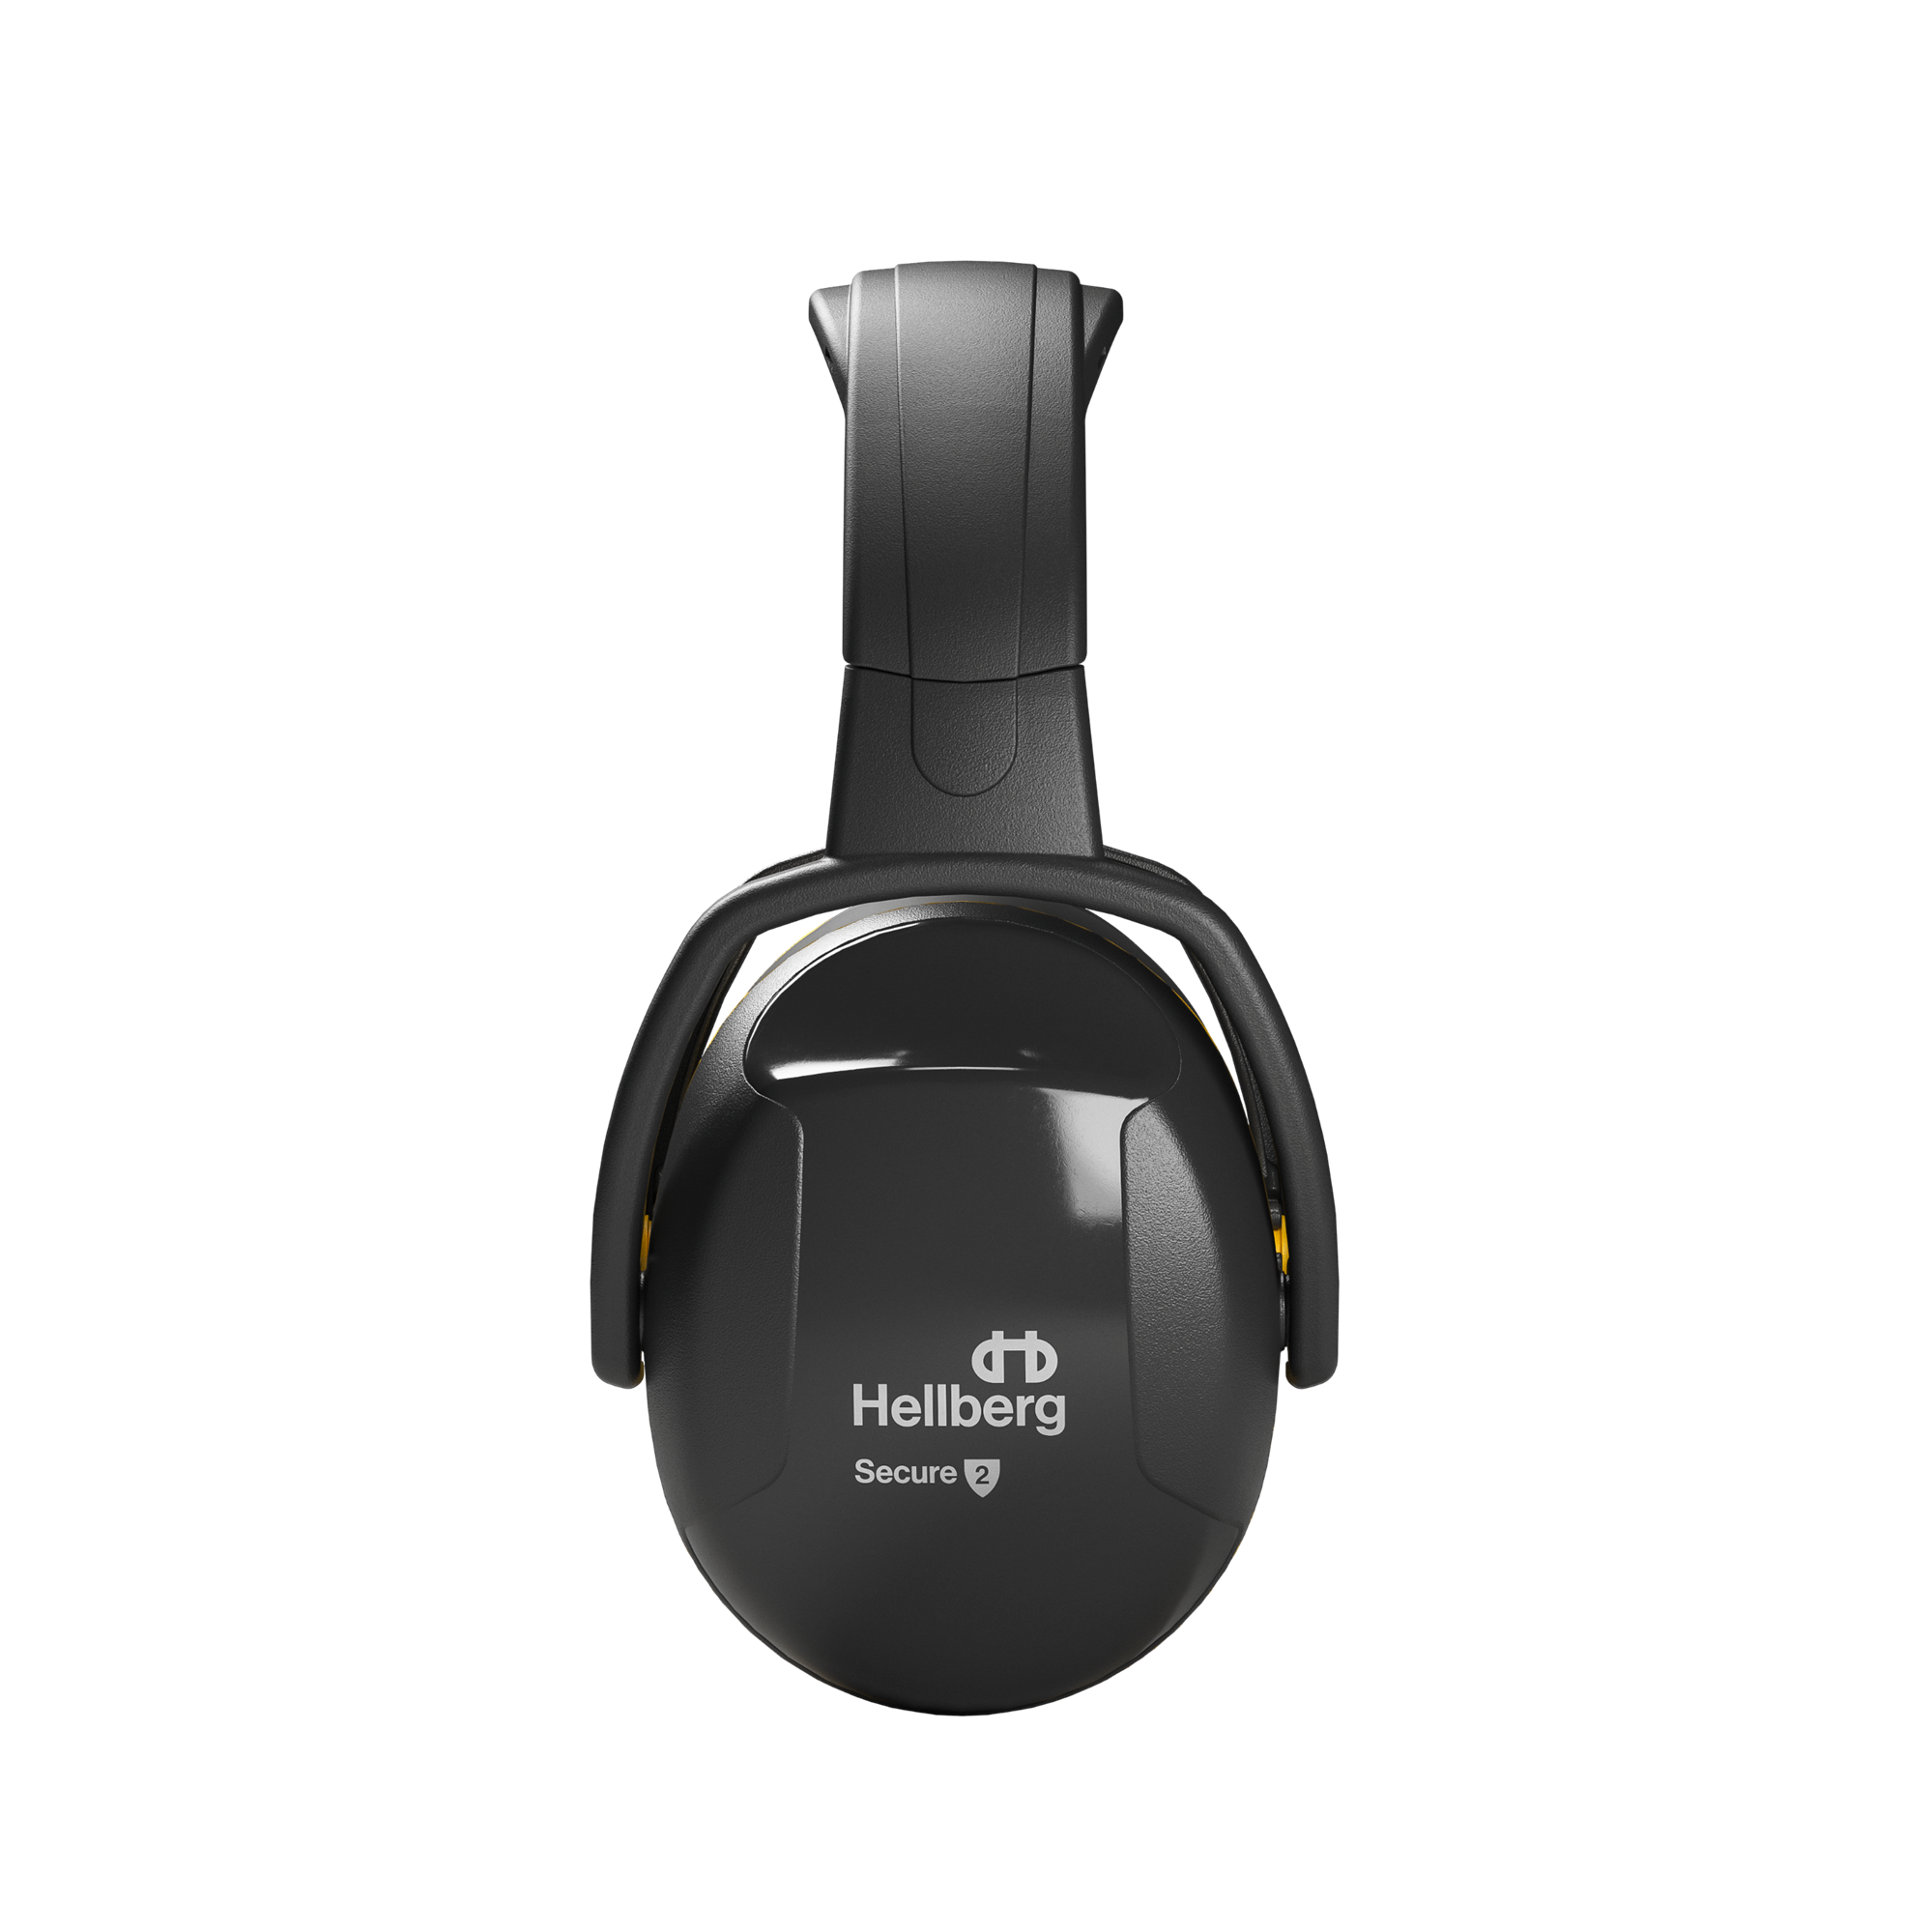 41002 001 Hellberg Secure 2 Kopfbügel, Gehörschutz, Kapselgehörschutz, Schutzstufe 2, 90 - 110 dB